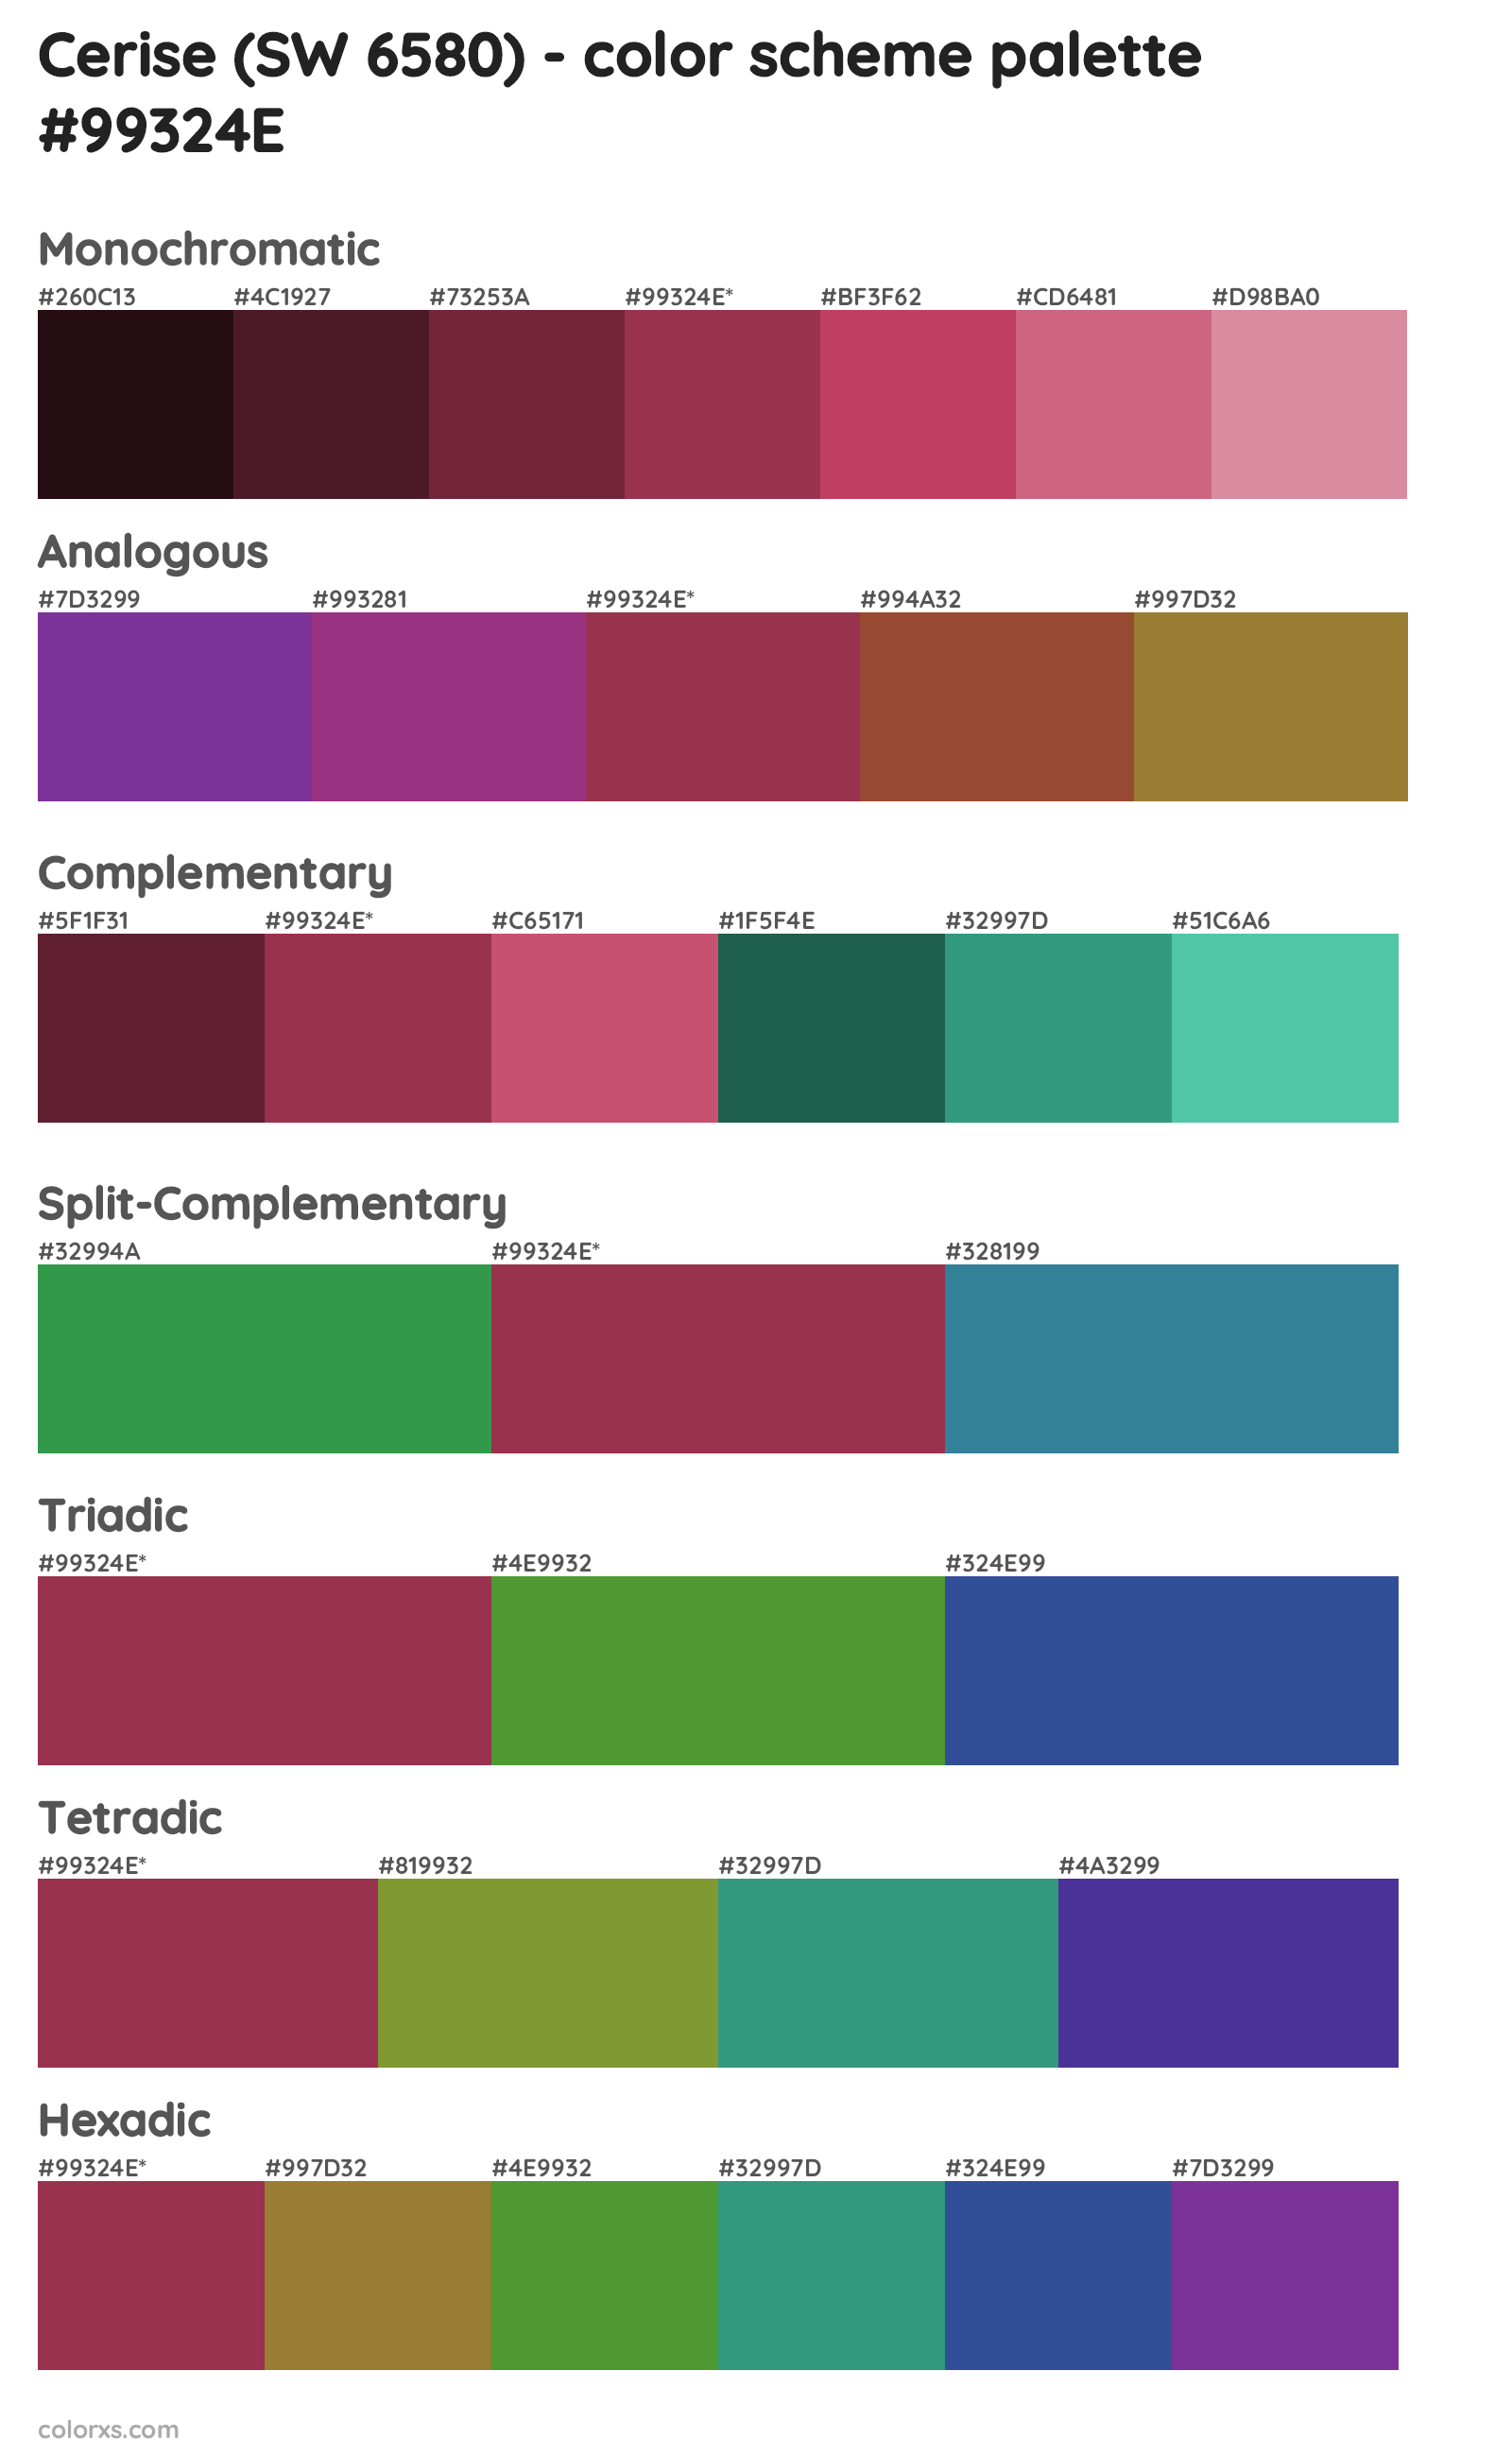 Cerise (SW 6580) Color Scheme Palettes